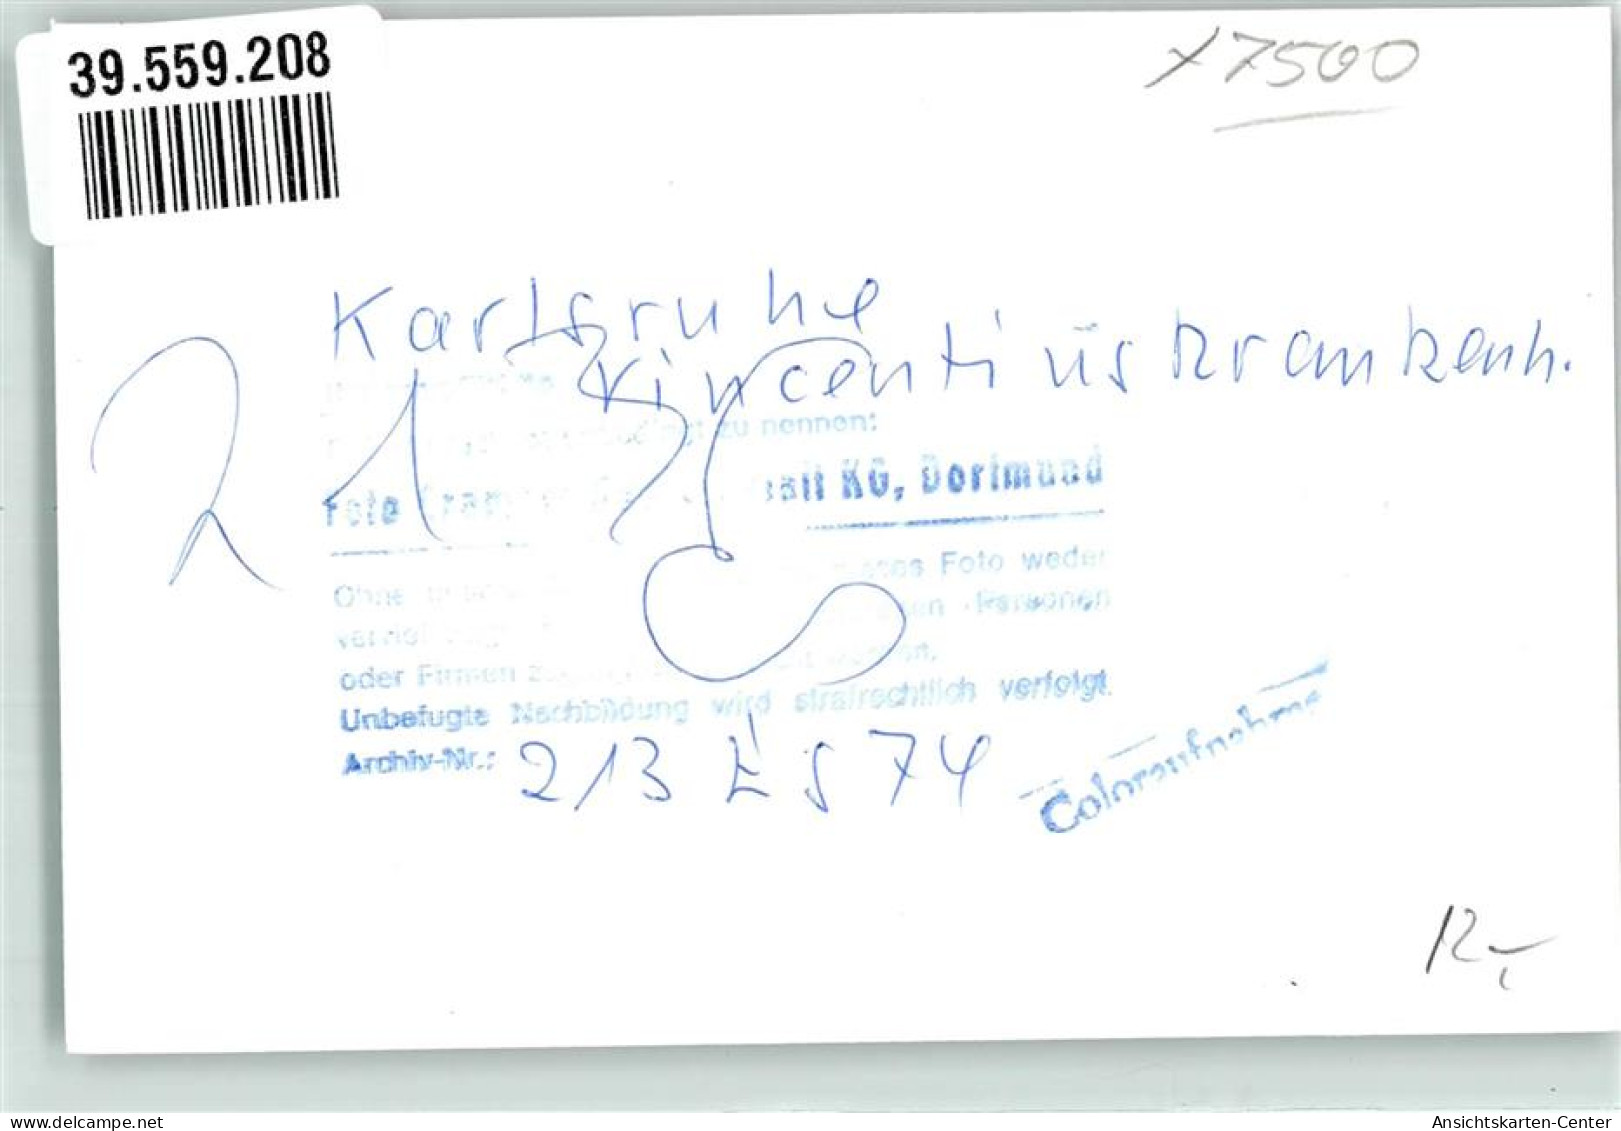 39559208 - Karlsruhe , Baden - Karlsruhe